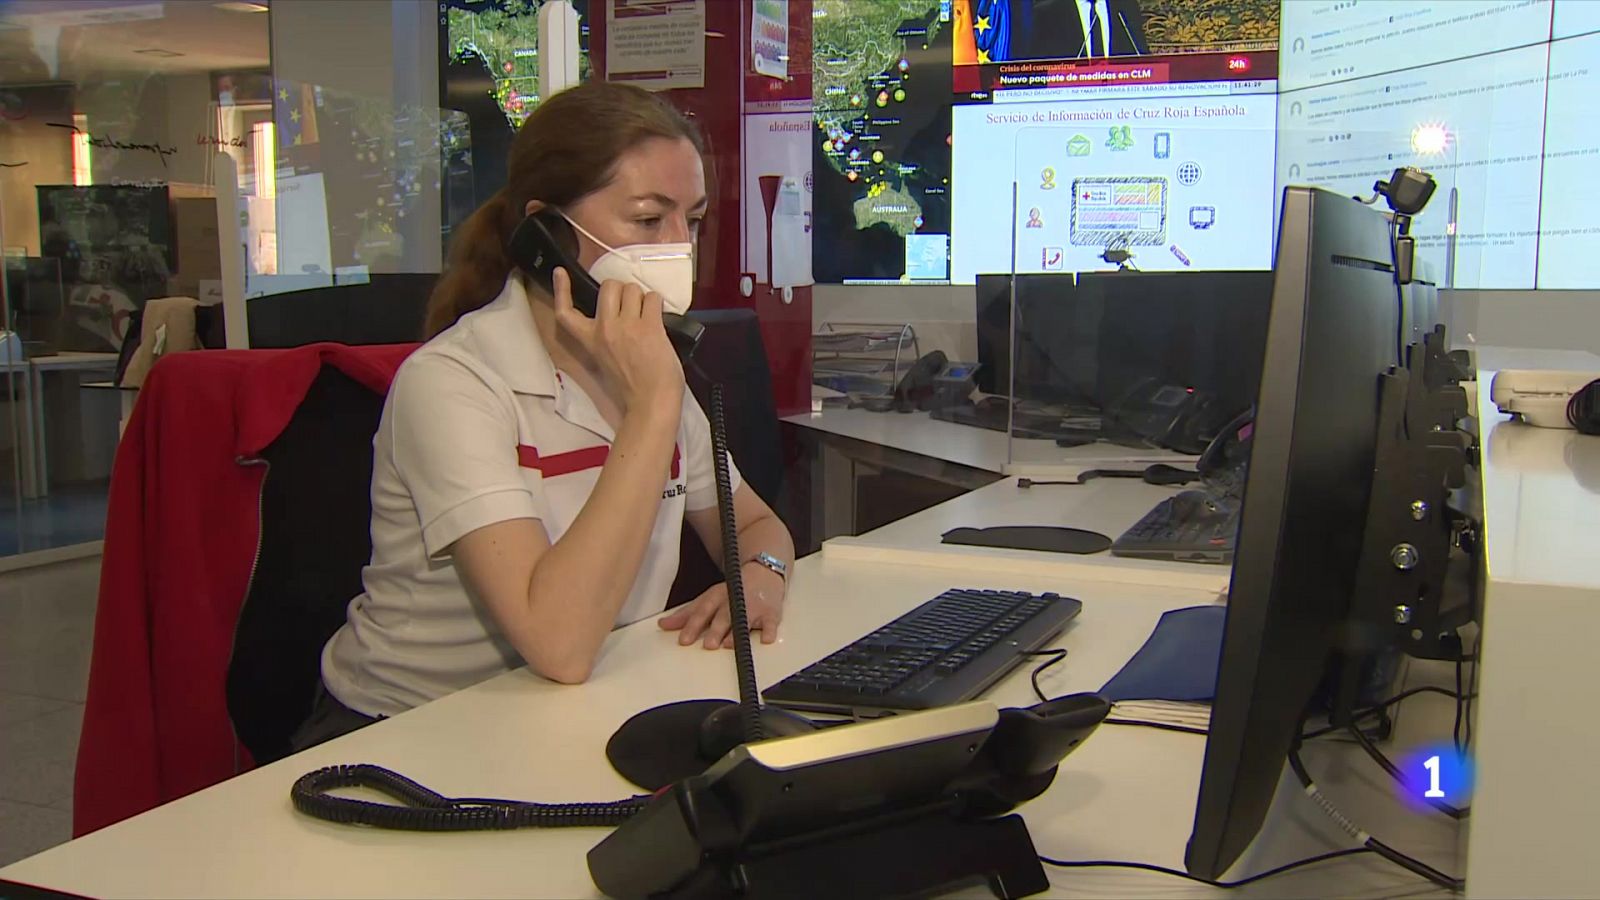 Cientos de voluntarios de Cruz Roja ayudan a través de un teléfono gratuito - RTVE.es